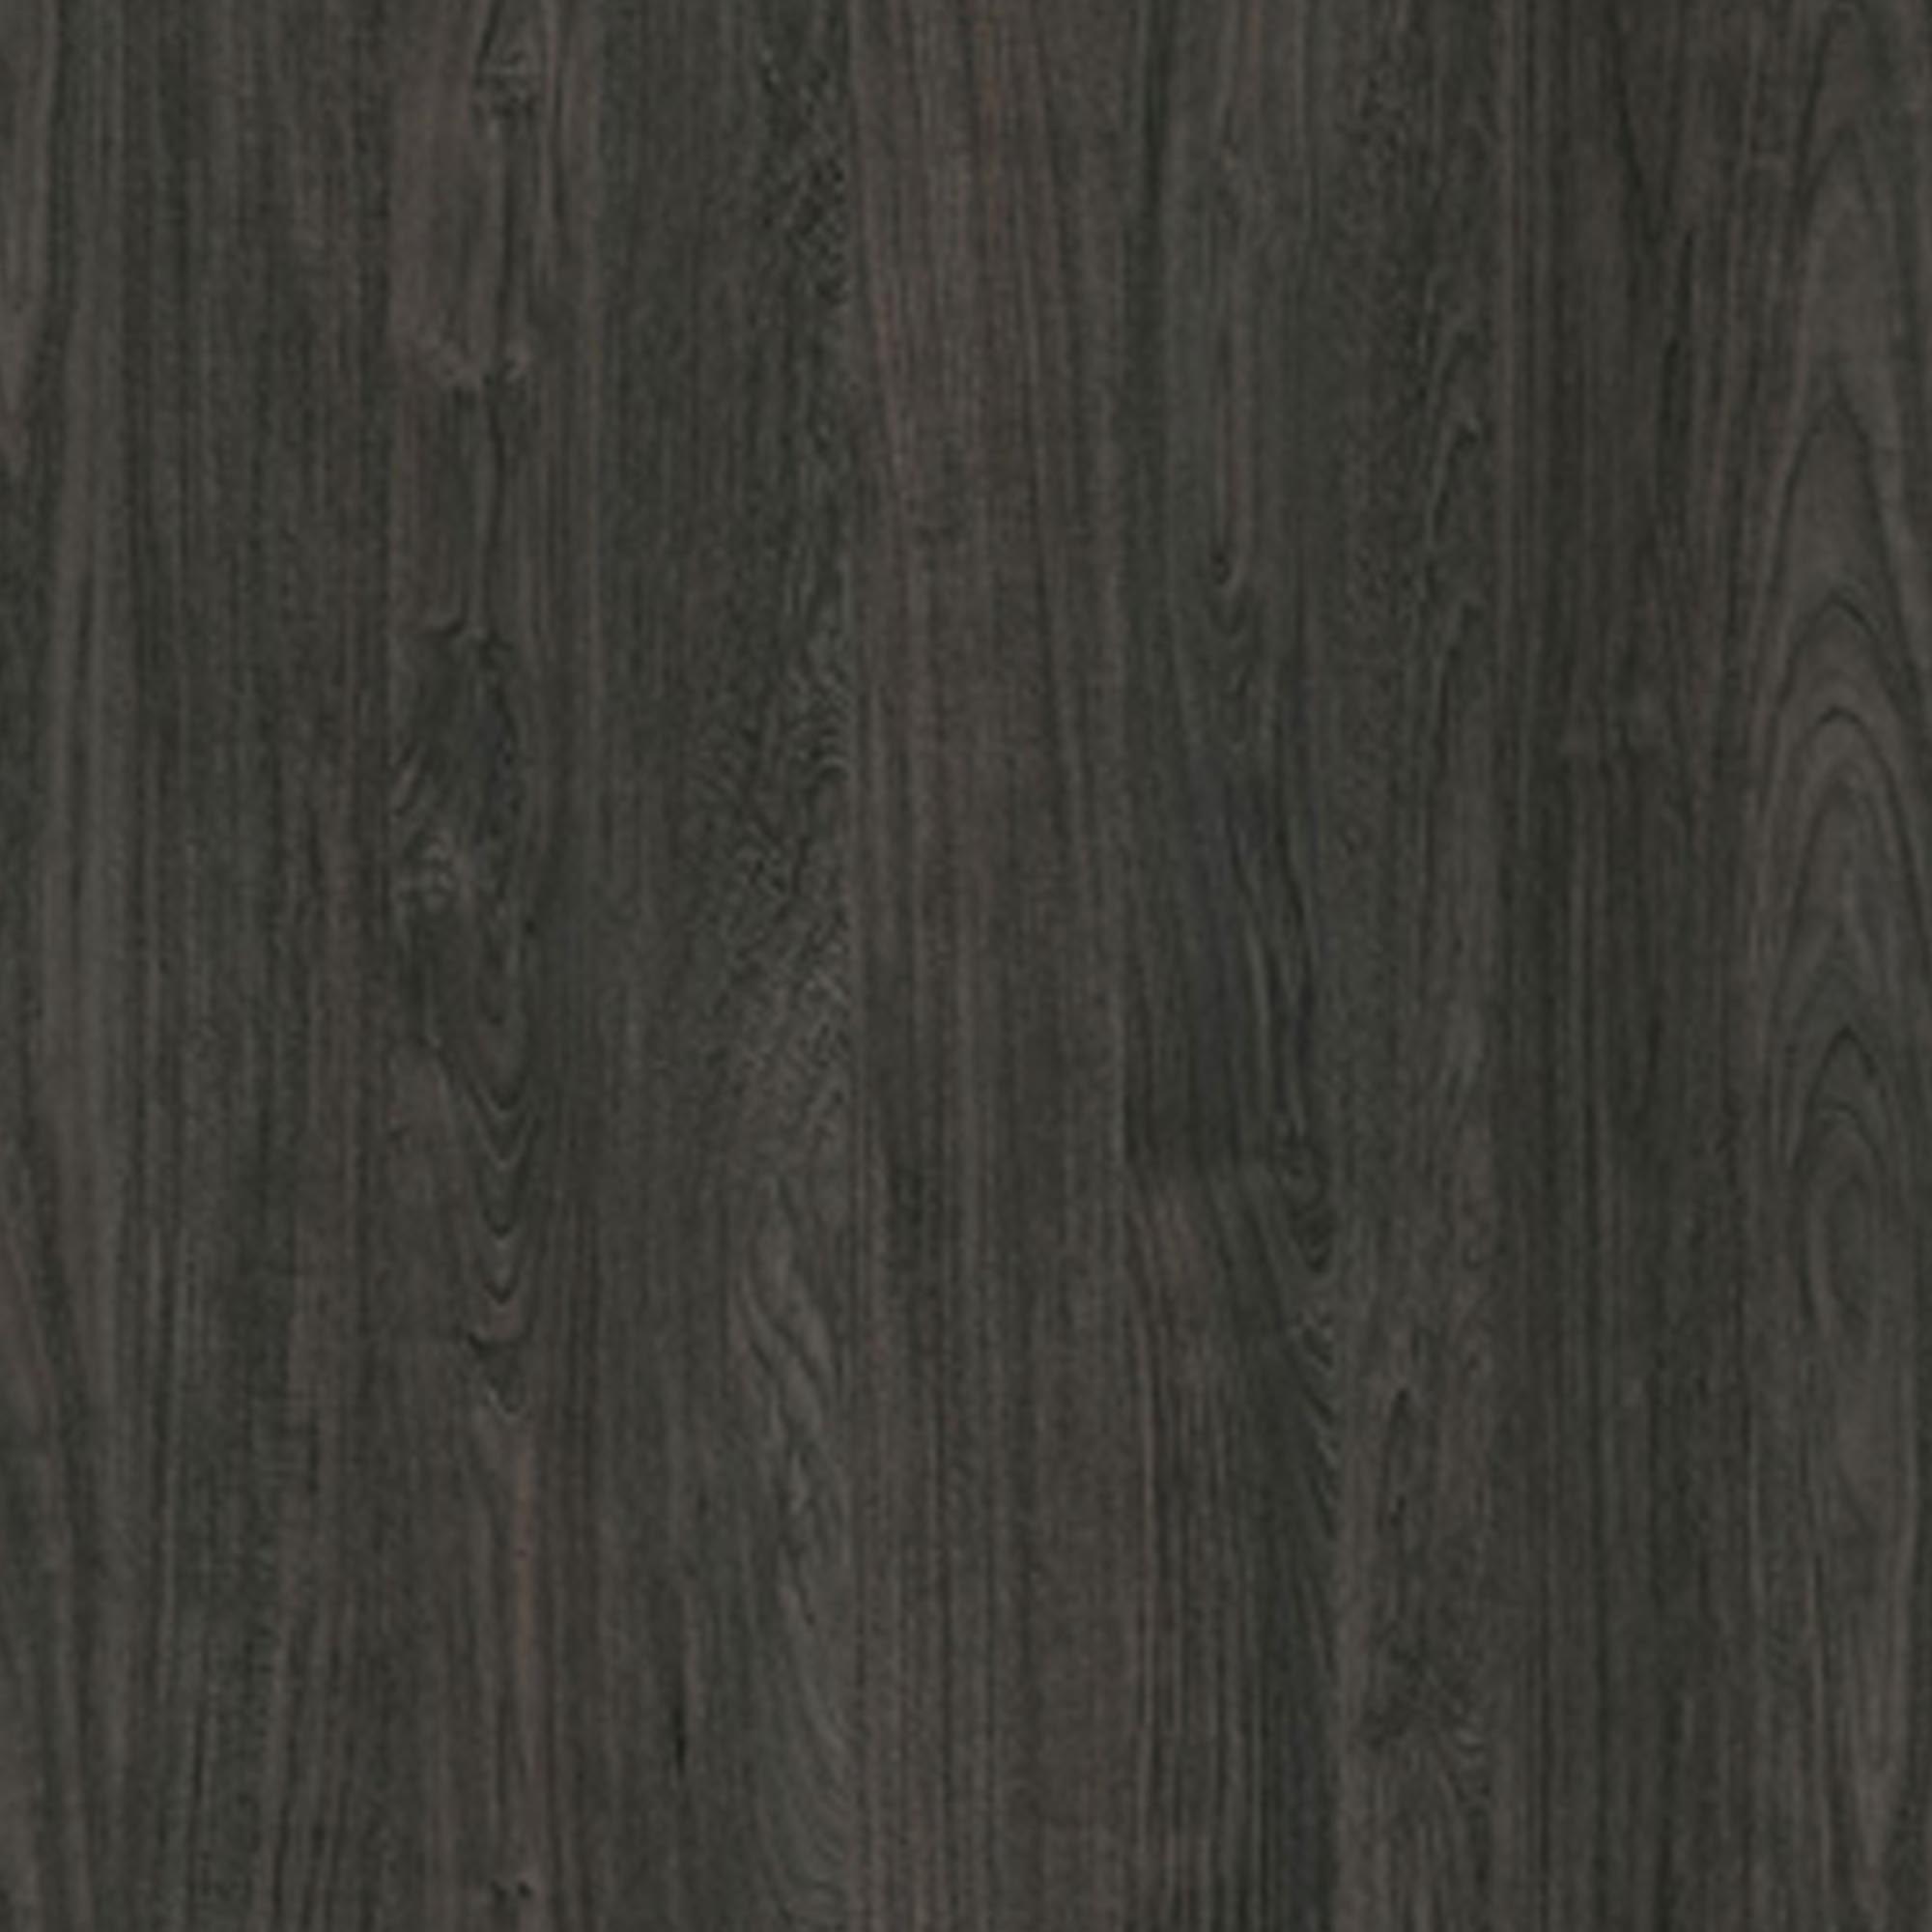 Tamara 240 konyhabútor szett - szénfa / hamuszürke márvány / fekete Készlet bútorok kuchennych tamara 240 - carbon wood / hamu márvány / fekete